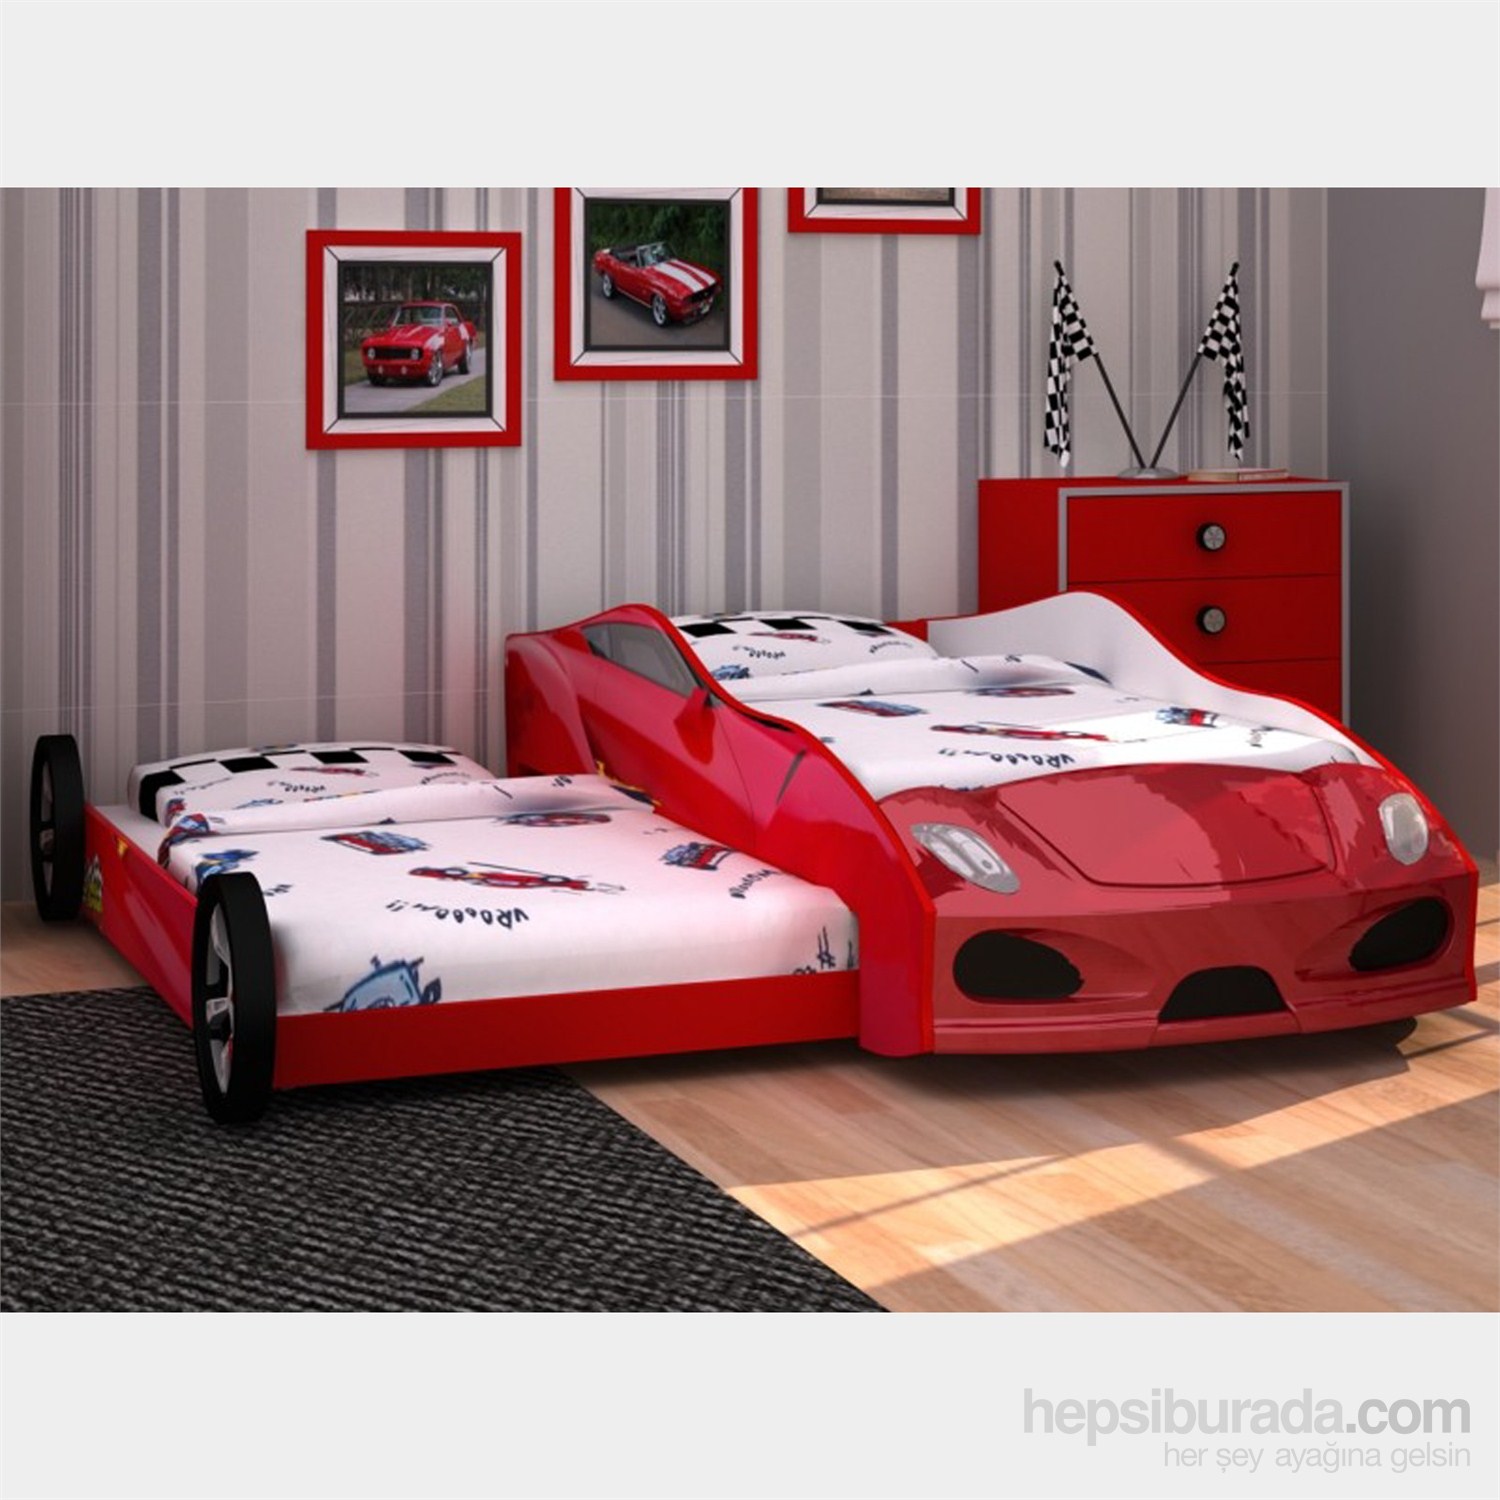 Arabalı Yatak 3D Yavrulu Kırmızı Fiyatı Taksit Seçenekleri